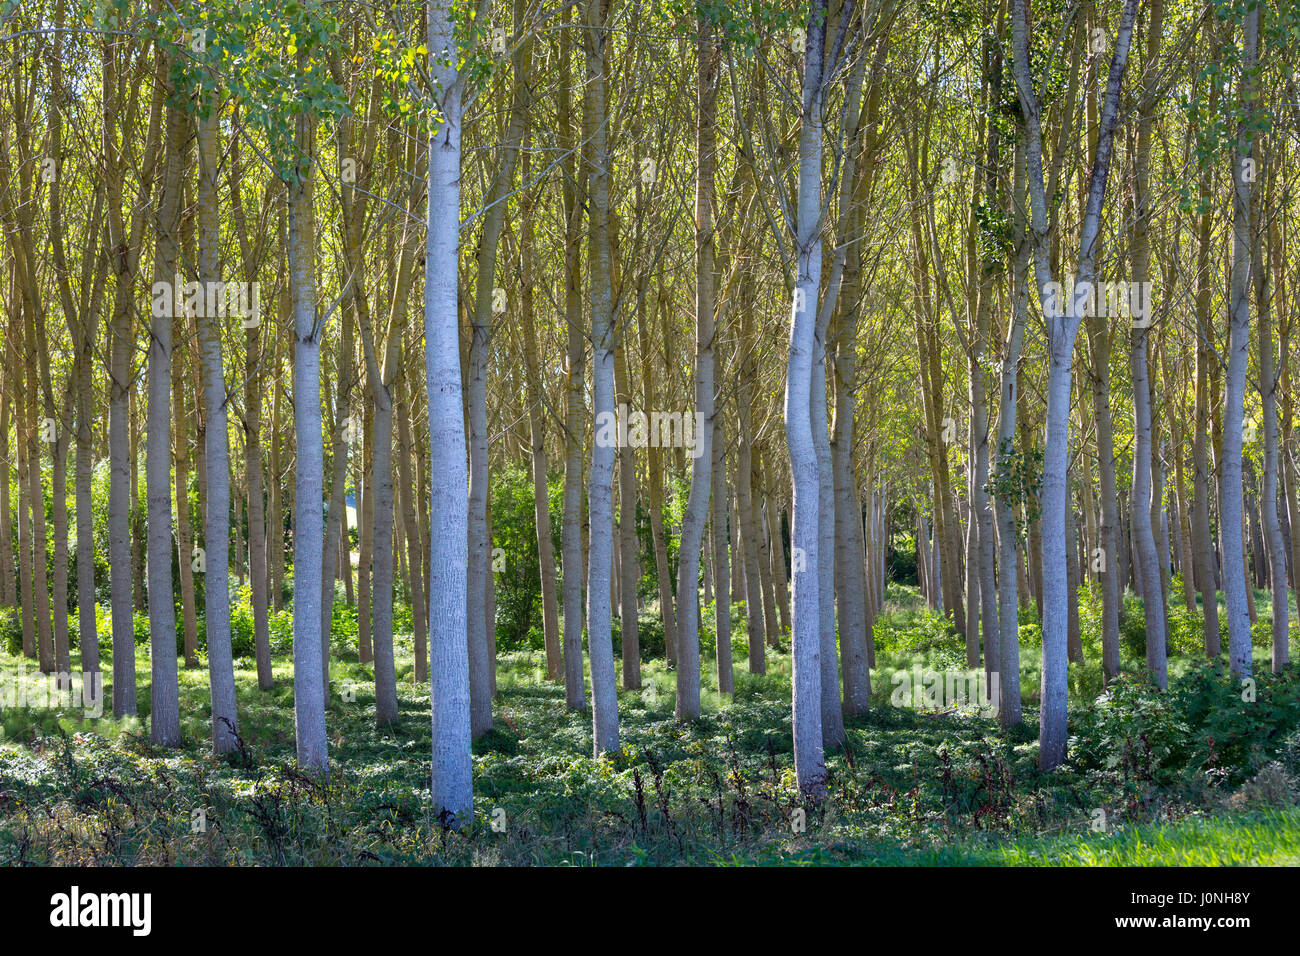 La lumière et l'ombre de grands bouleaux - plantation gérés bosquet de bouleau blanc bouleau blanc européen Arbres Betula pendula, France Banque D'Images